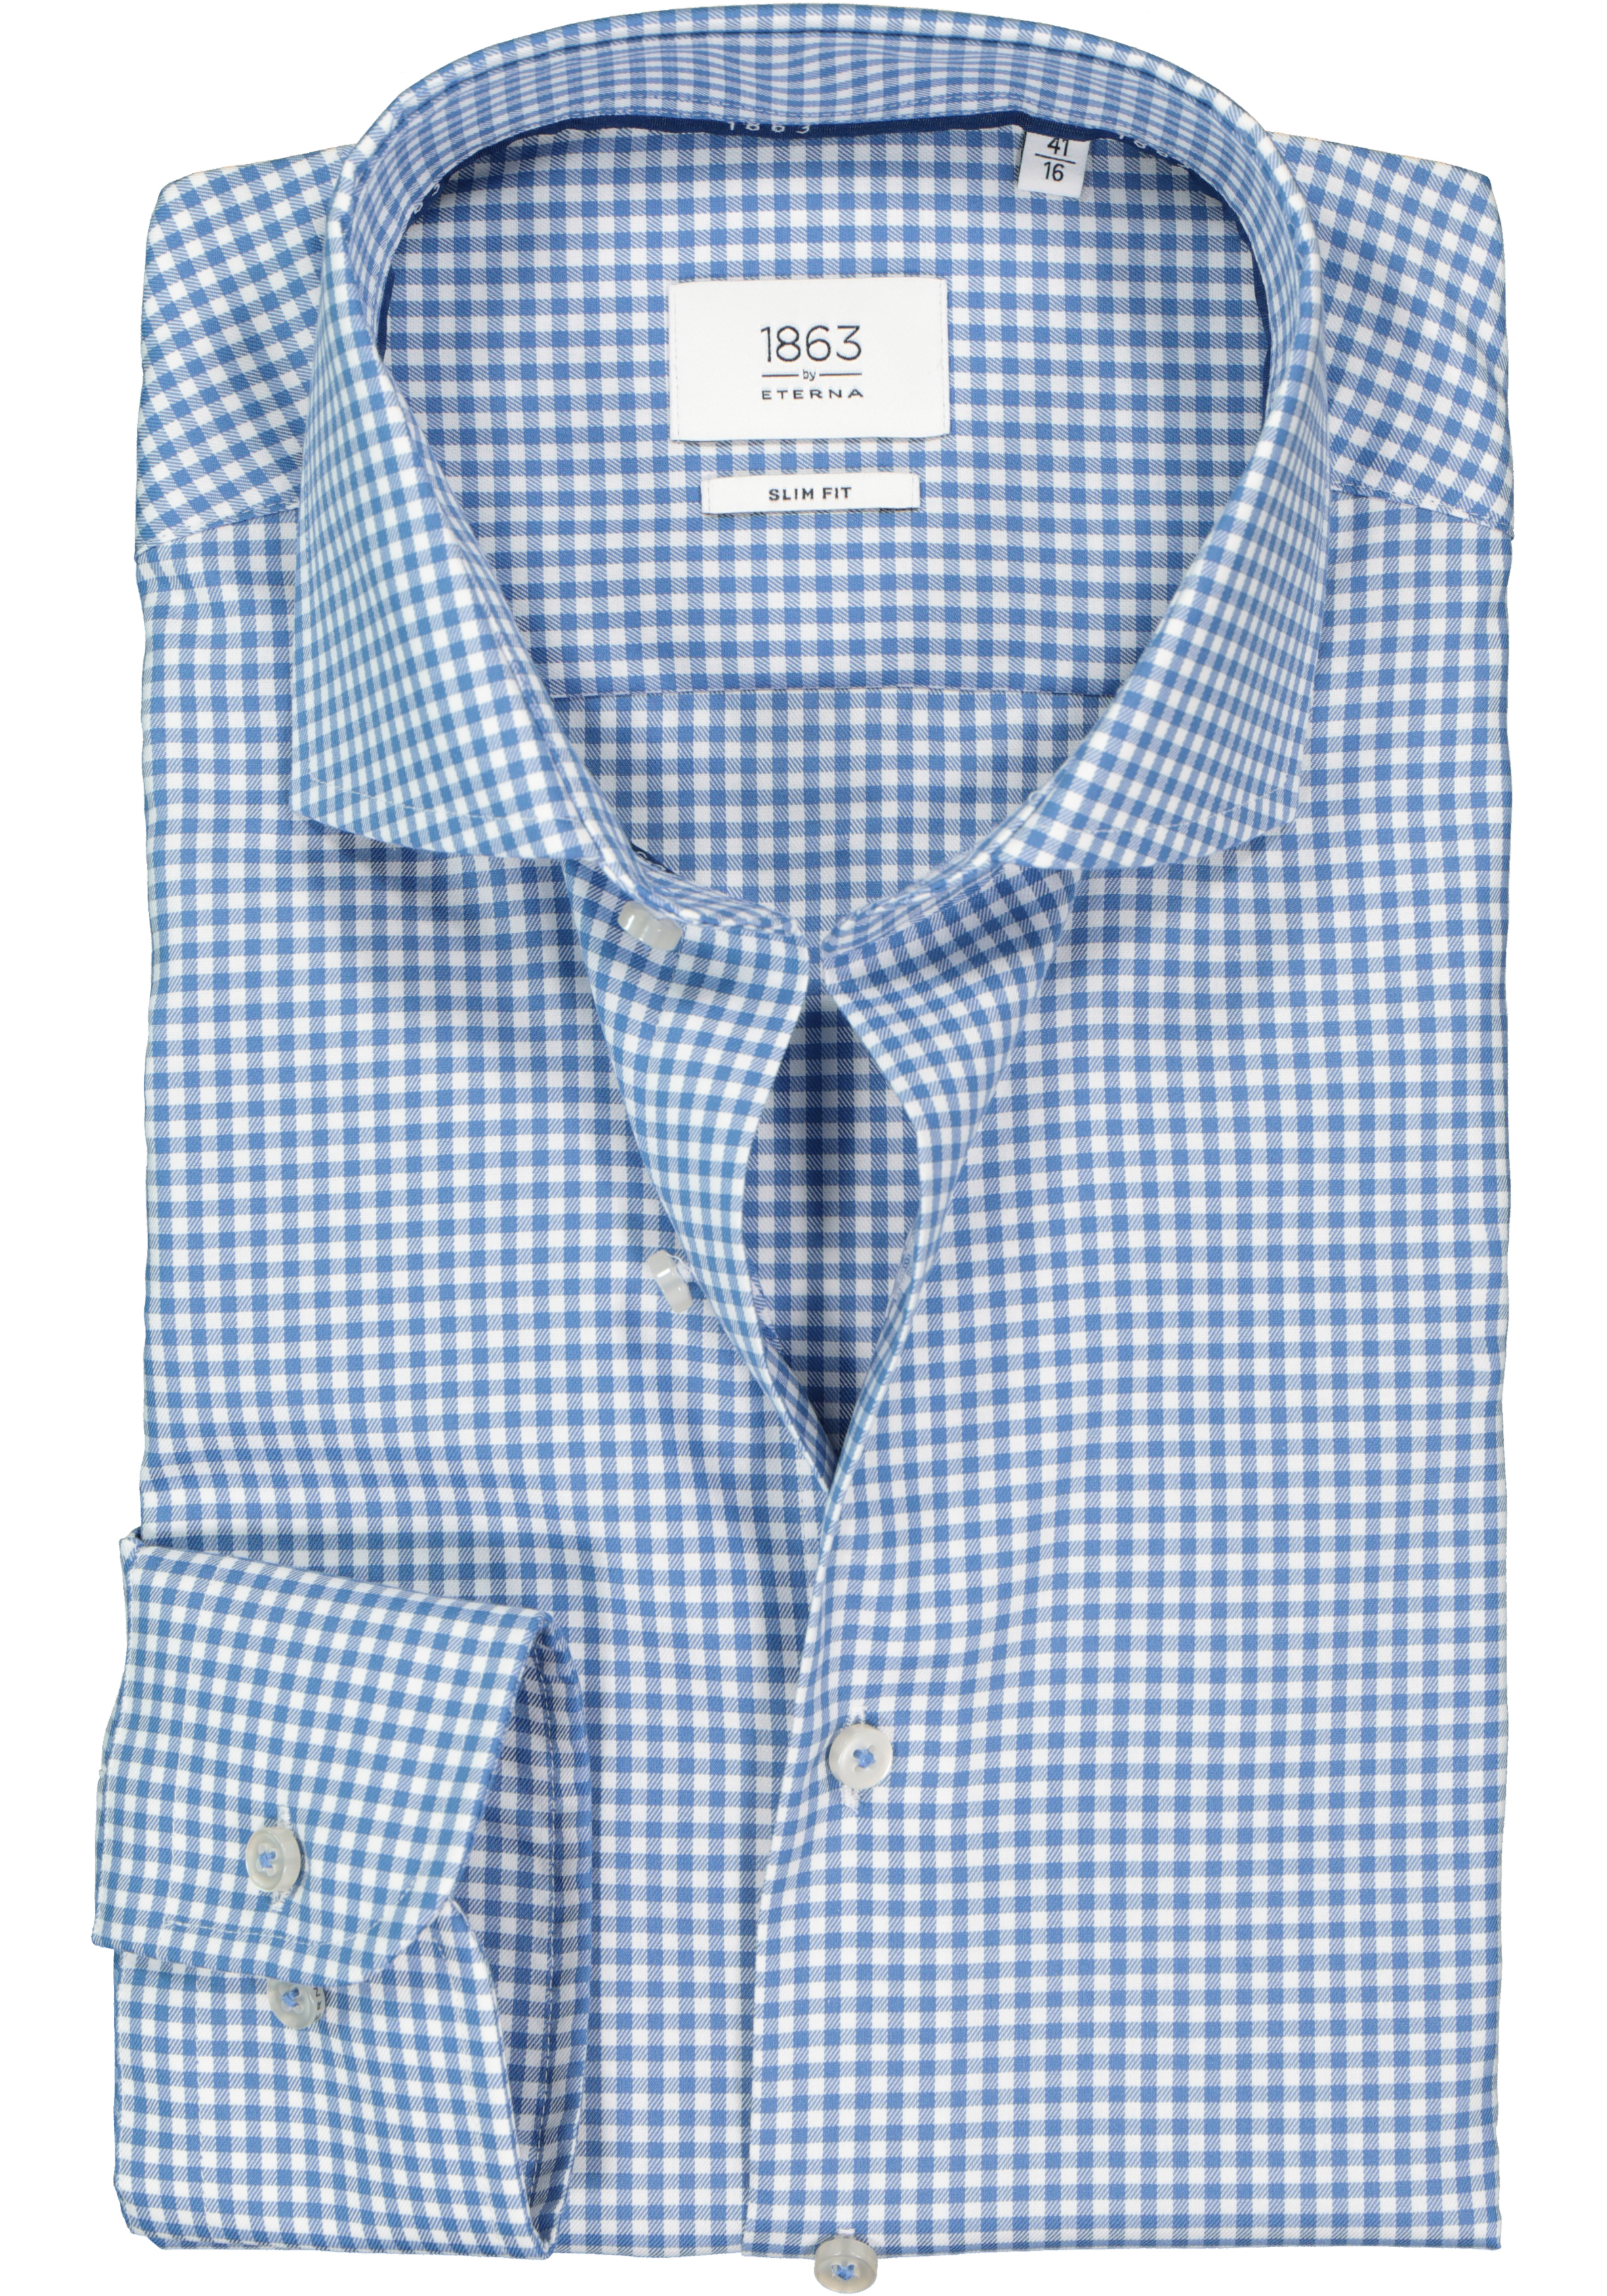 ETERNA 1863 slim fit premium overhemd, 2-ply twill heren overhemd, blauw met wit geruit